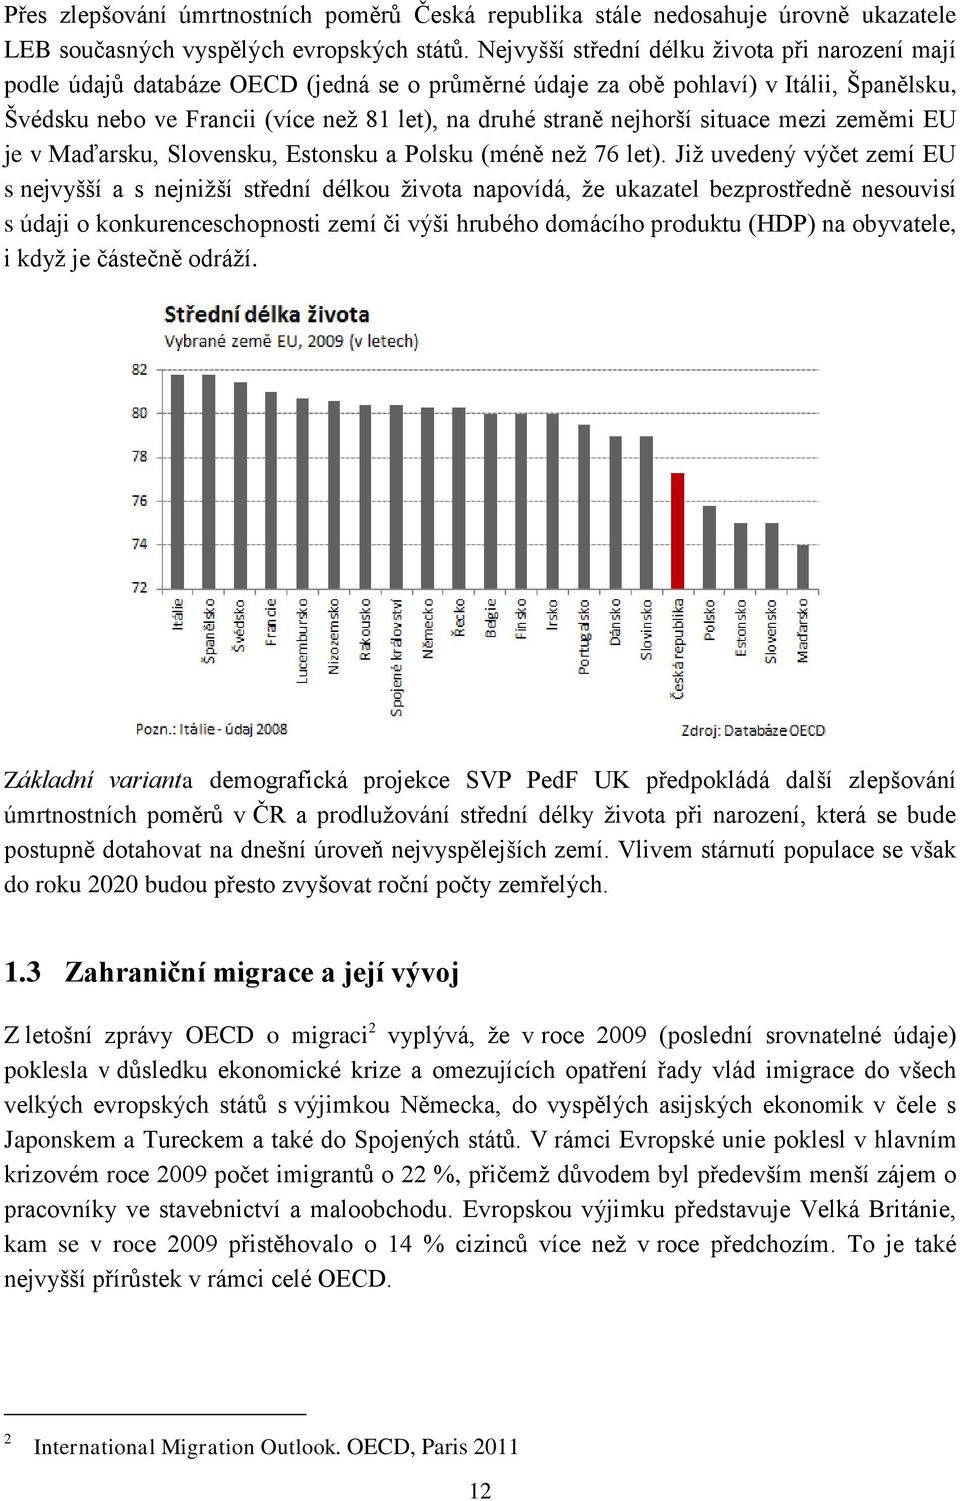 nejhorší situace mezi zeměmi EU je v Maďarsku, Slovensku, Estonsku a Polsku (méně než 76 let).